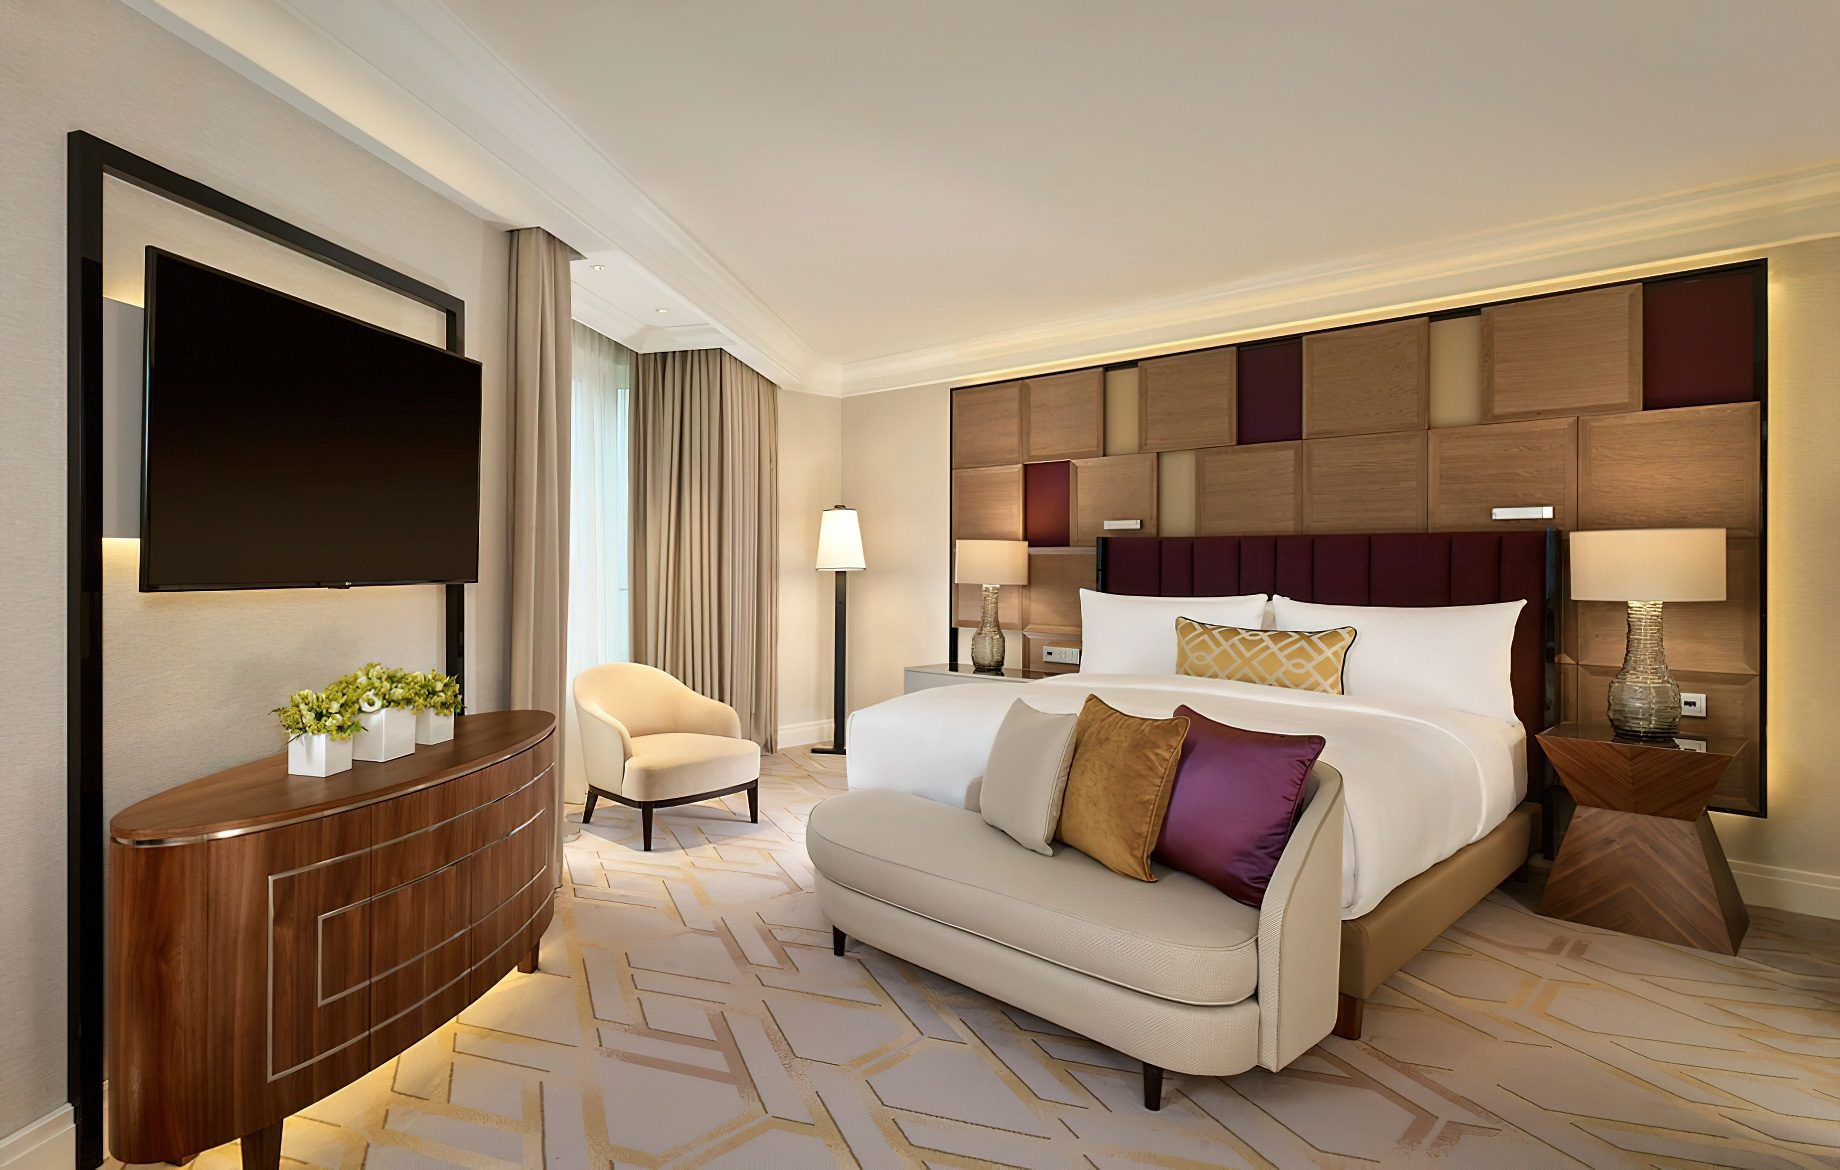 The Ritz-Carlton, Berlin Hotel – Berlin, Germany – Deluxe Suite Bedroom Interior